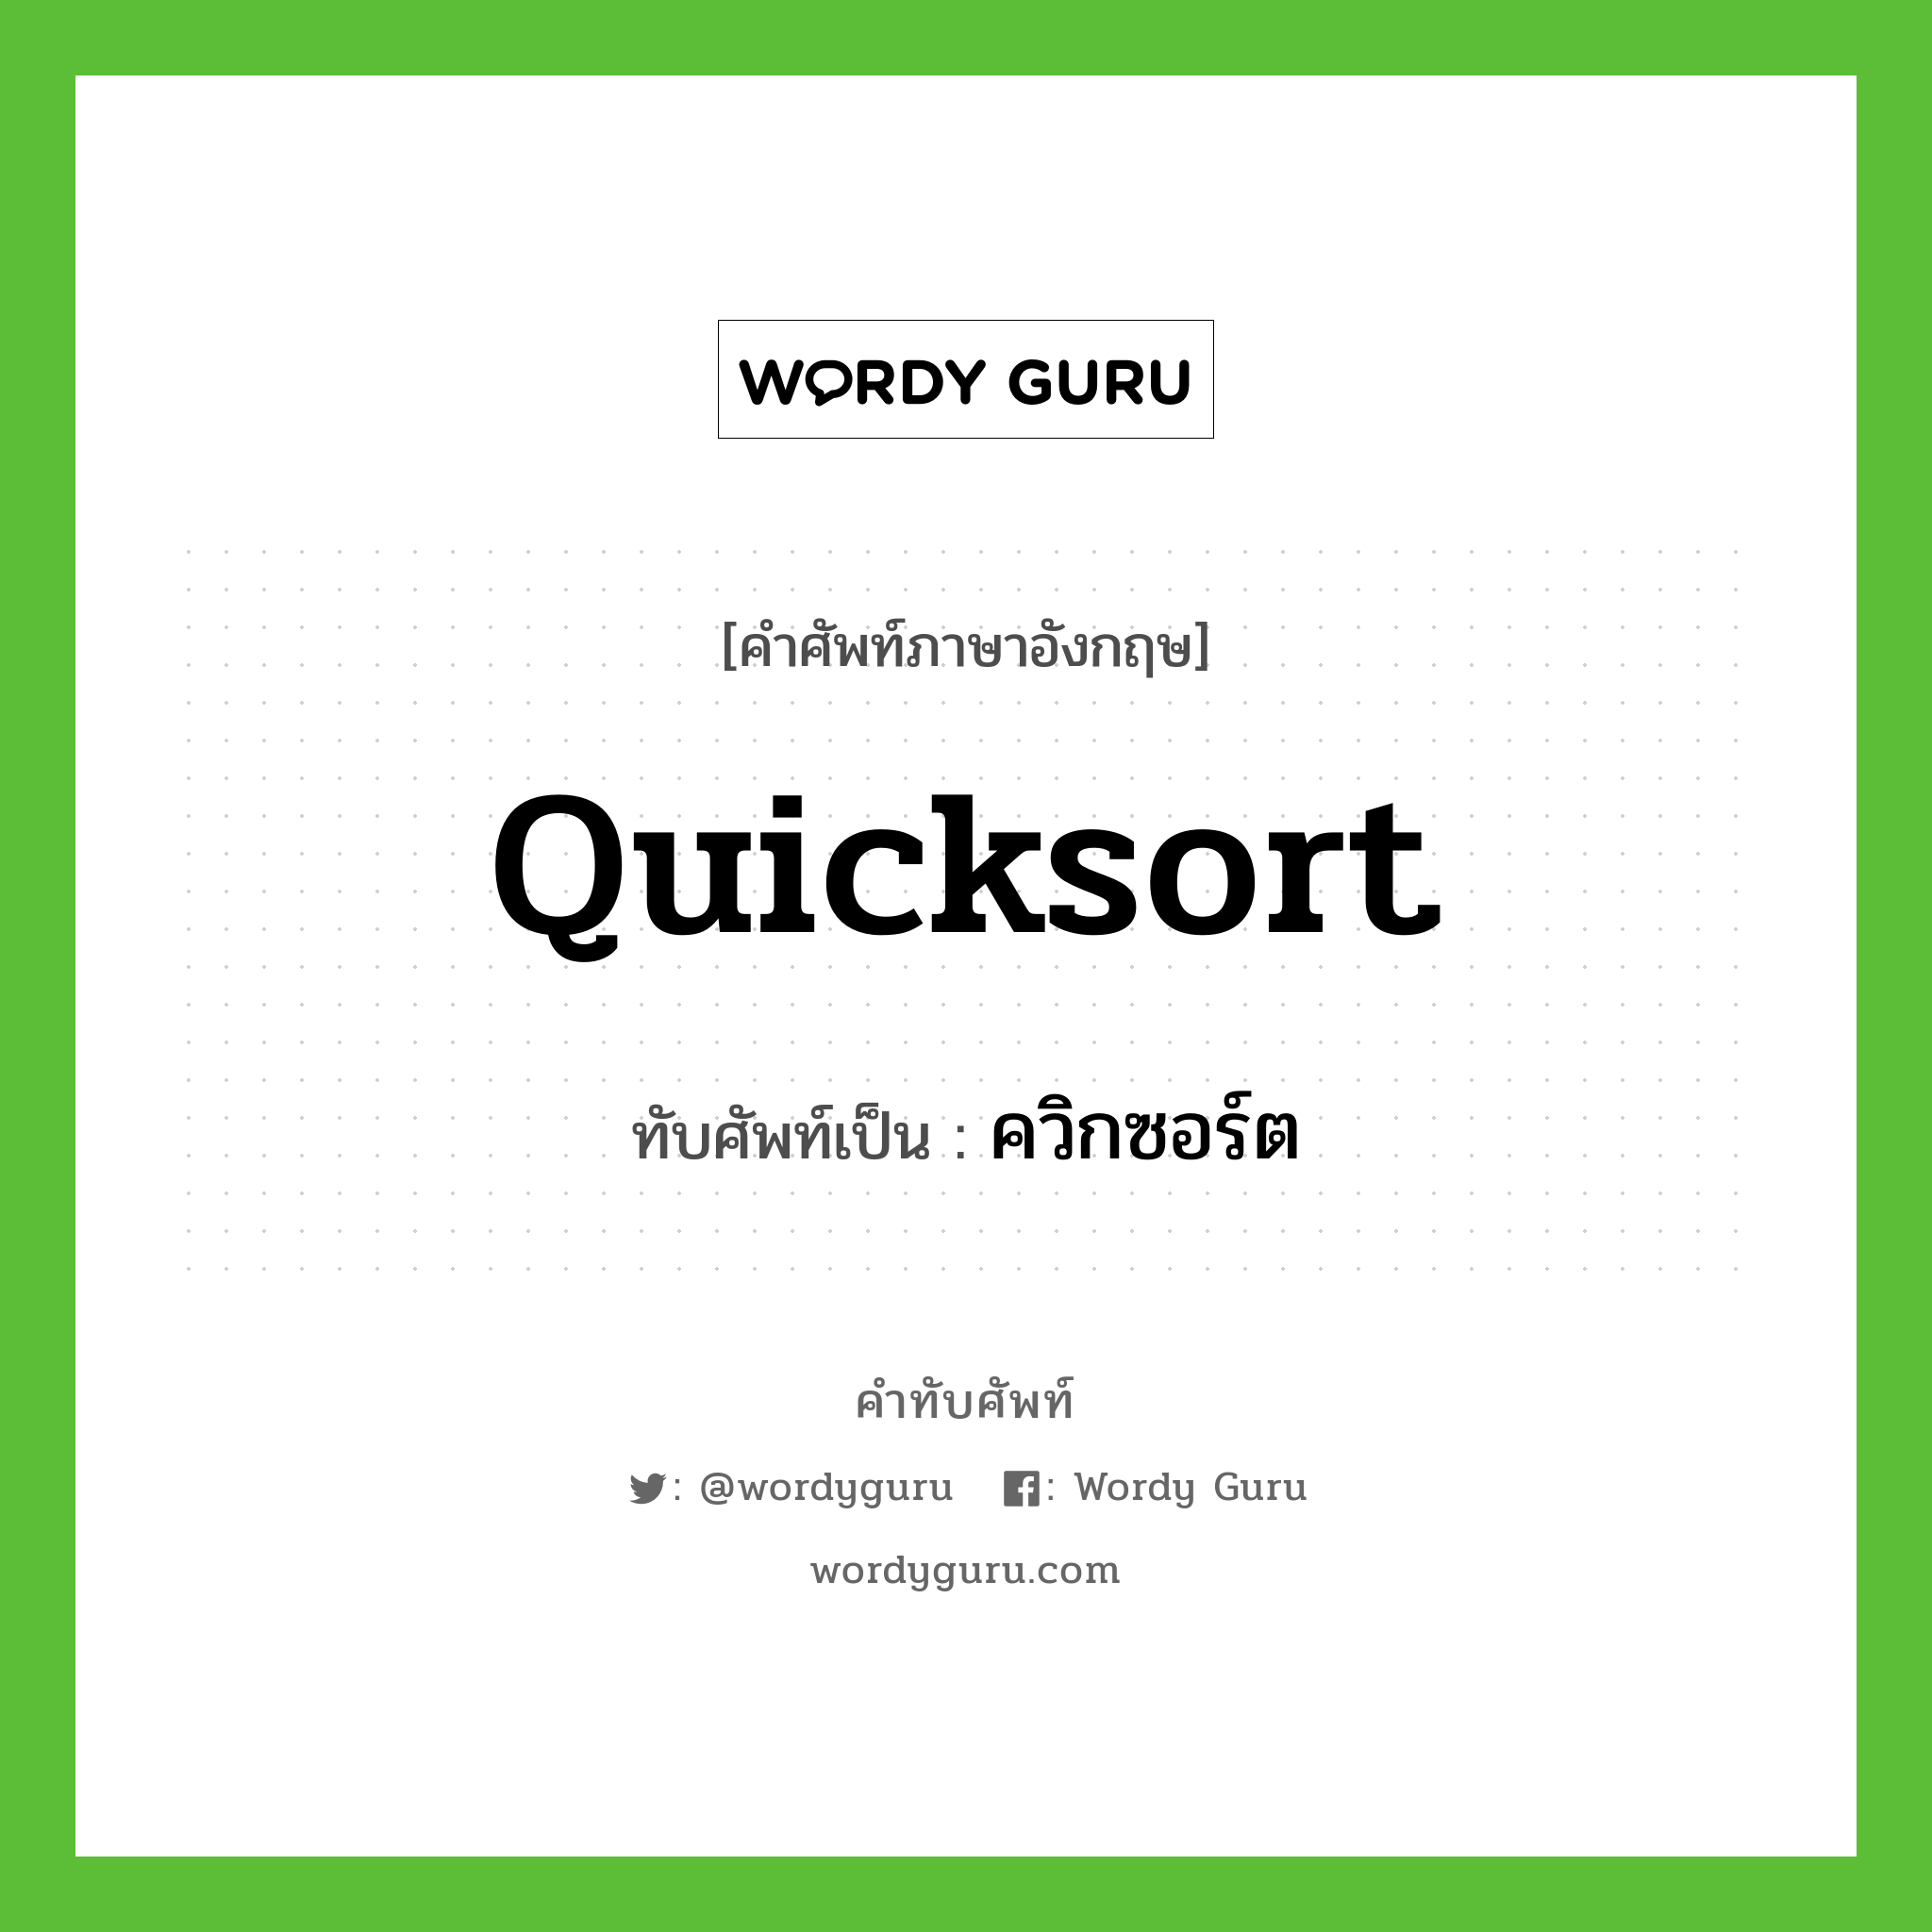 quicksort เขียนเป็นคำไทยว่าอะไร?, คำศัพท์ภาษาอังกฤษ quicksort ทับศัพท์เป็น ควิกซอร์ต